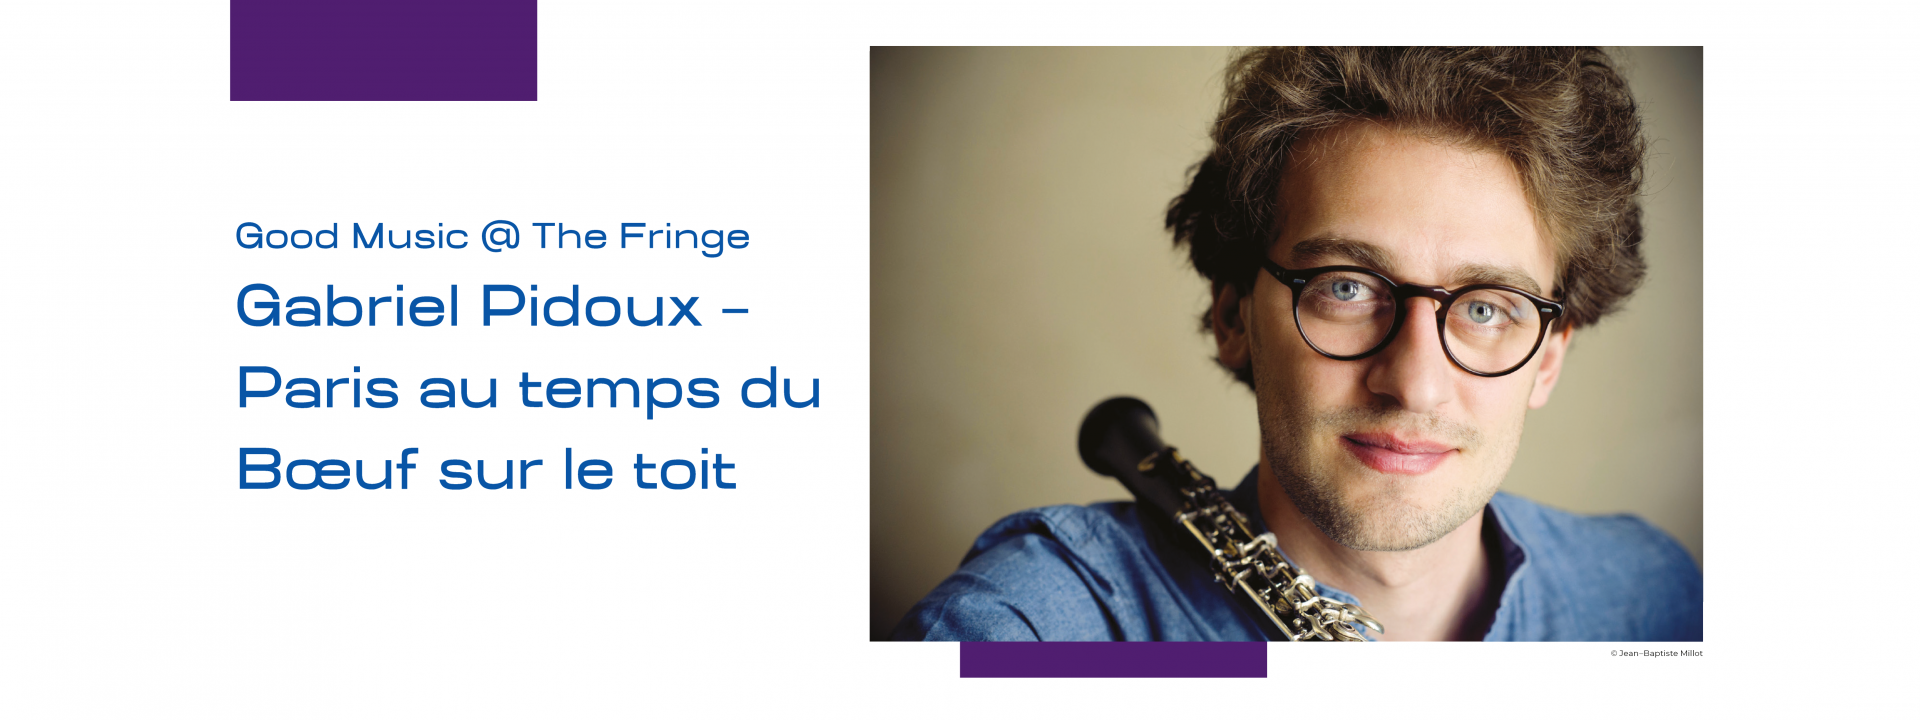 Good Music @ The Fringe: Gabriel Pidoux – Paris au temps du Boeuf sur le toit